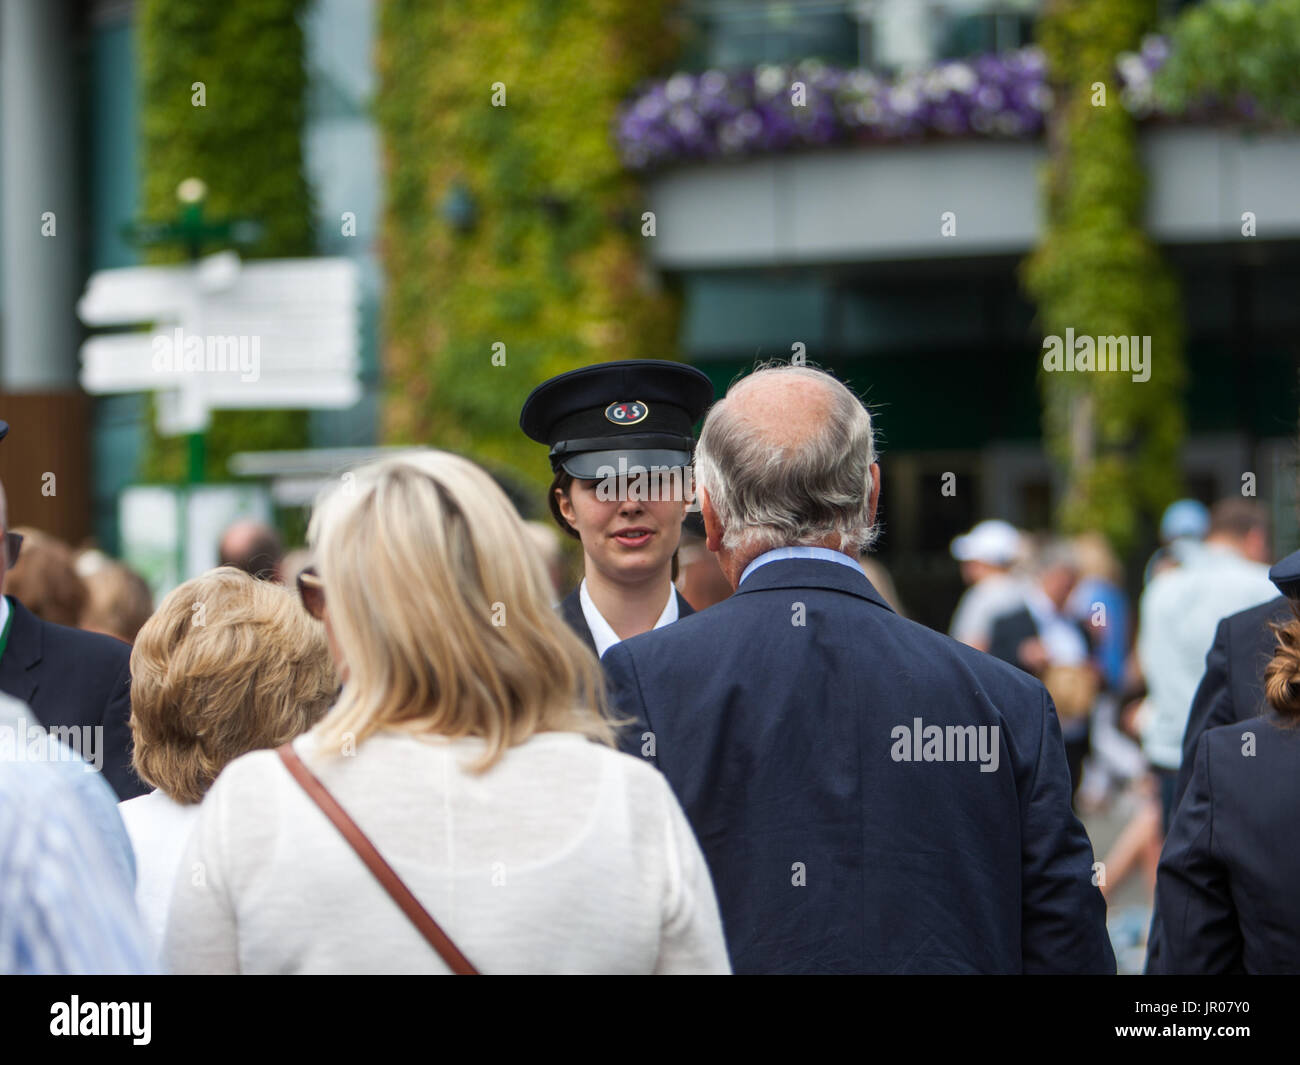 Code e scene intorno al primo giorno di Wimbledon. Dotato di: atmosfera, vista in cui: Londra, Regno Unito quando: 03 lug 2017 Credit: Wheatley/WENN Foto Stock